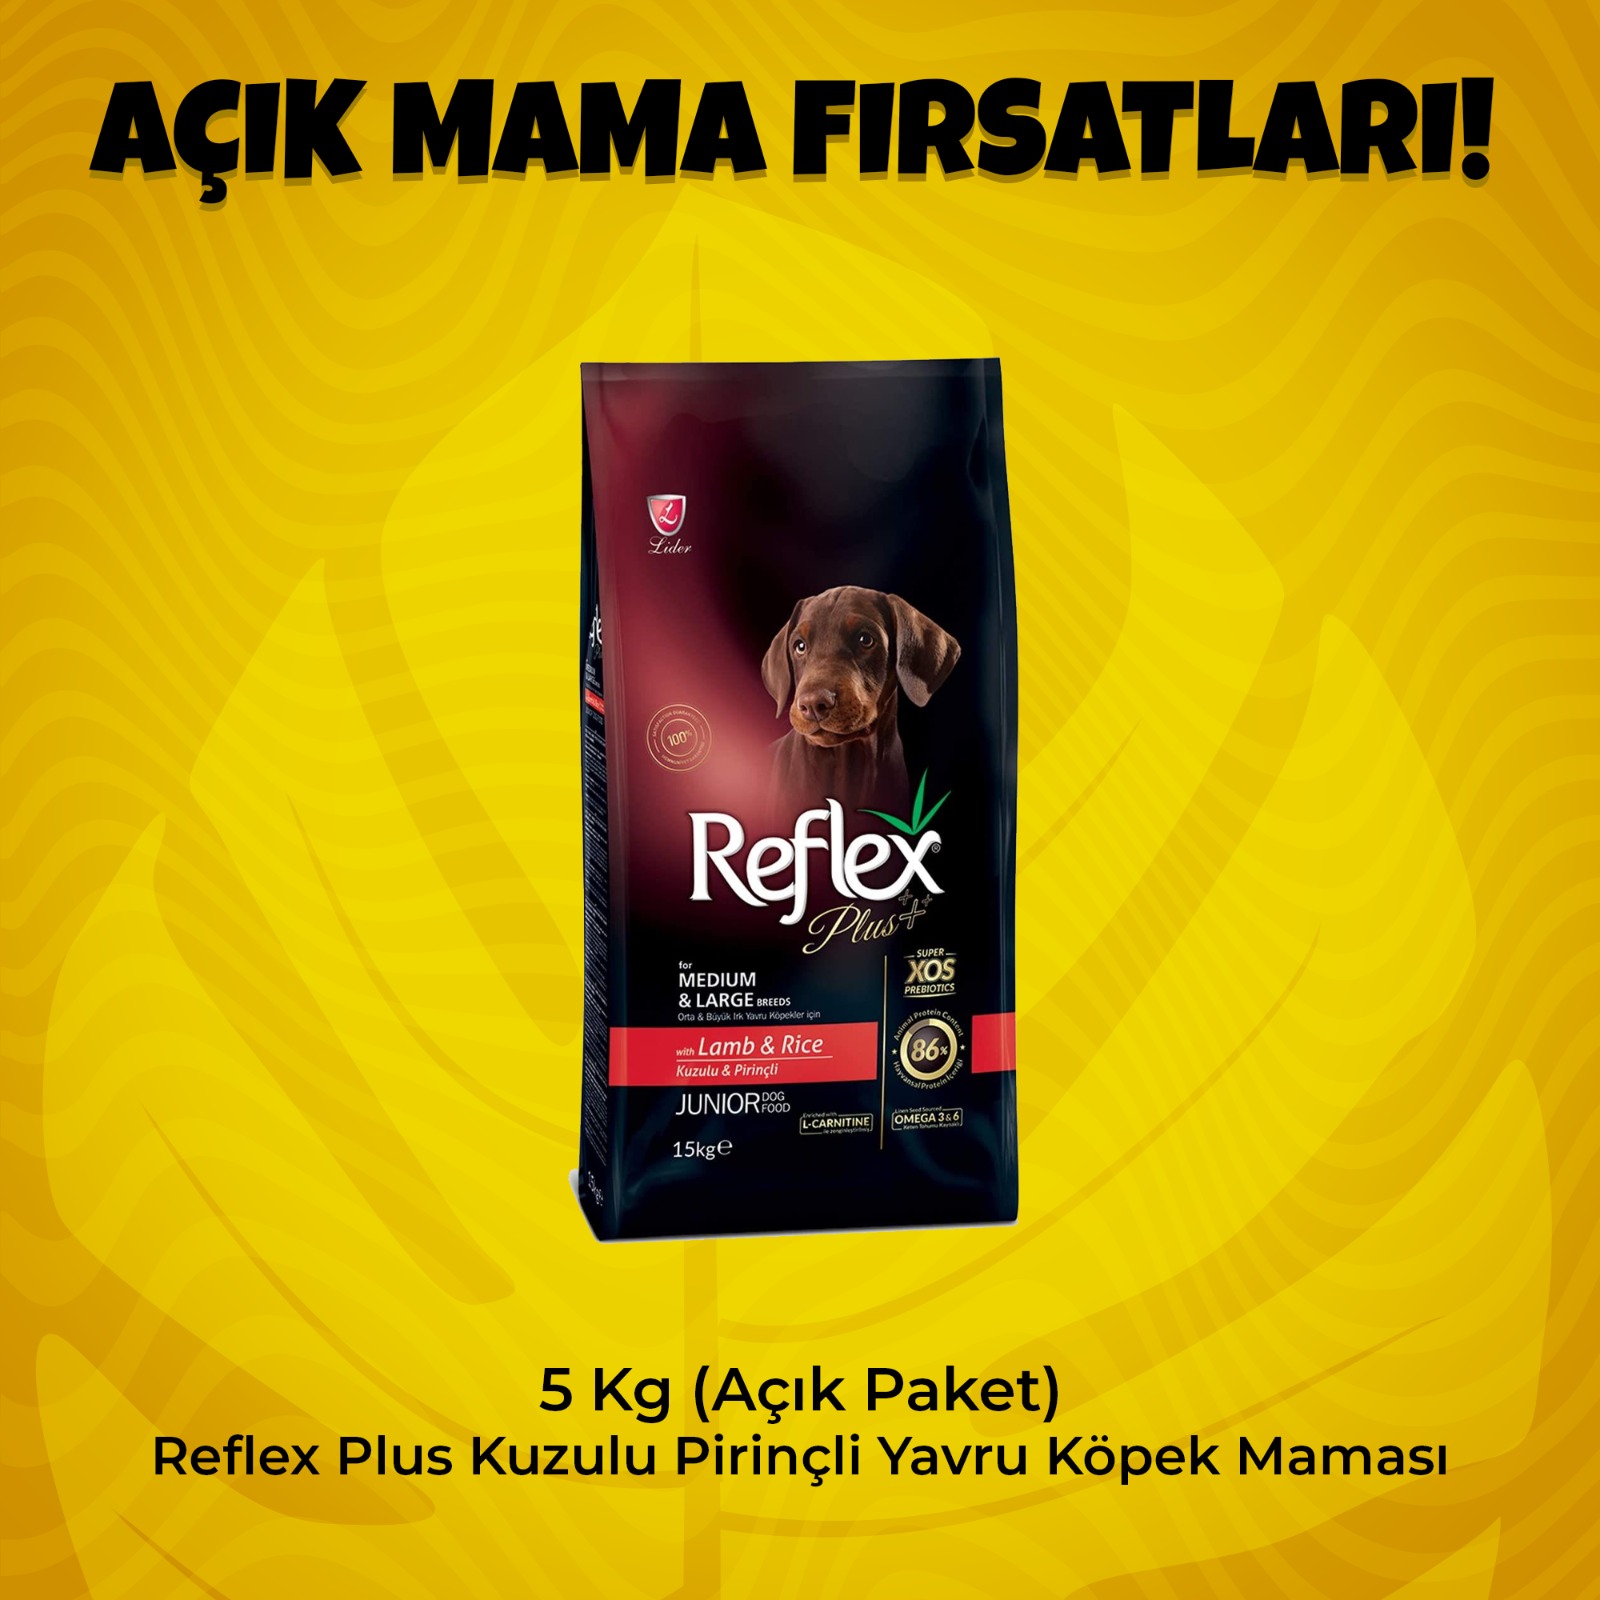 Reflex Plus Kuzulu Pirinçli Yavru Köpek Maması 5 kg Açık Paket